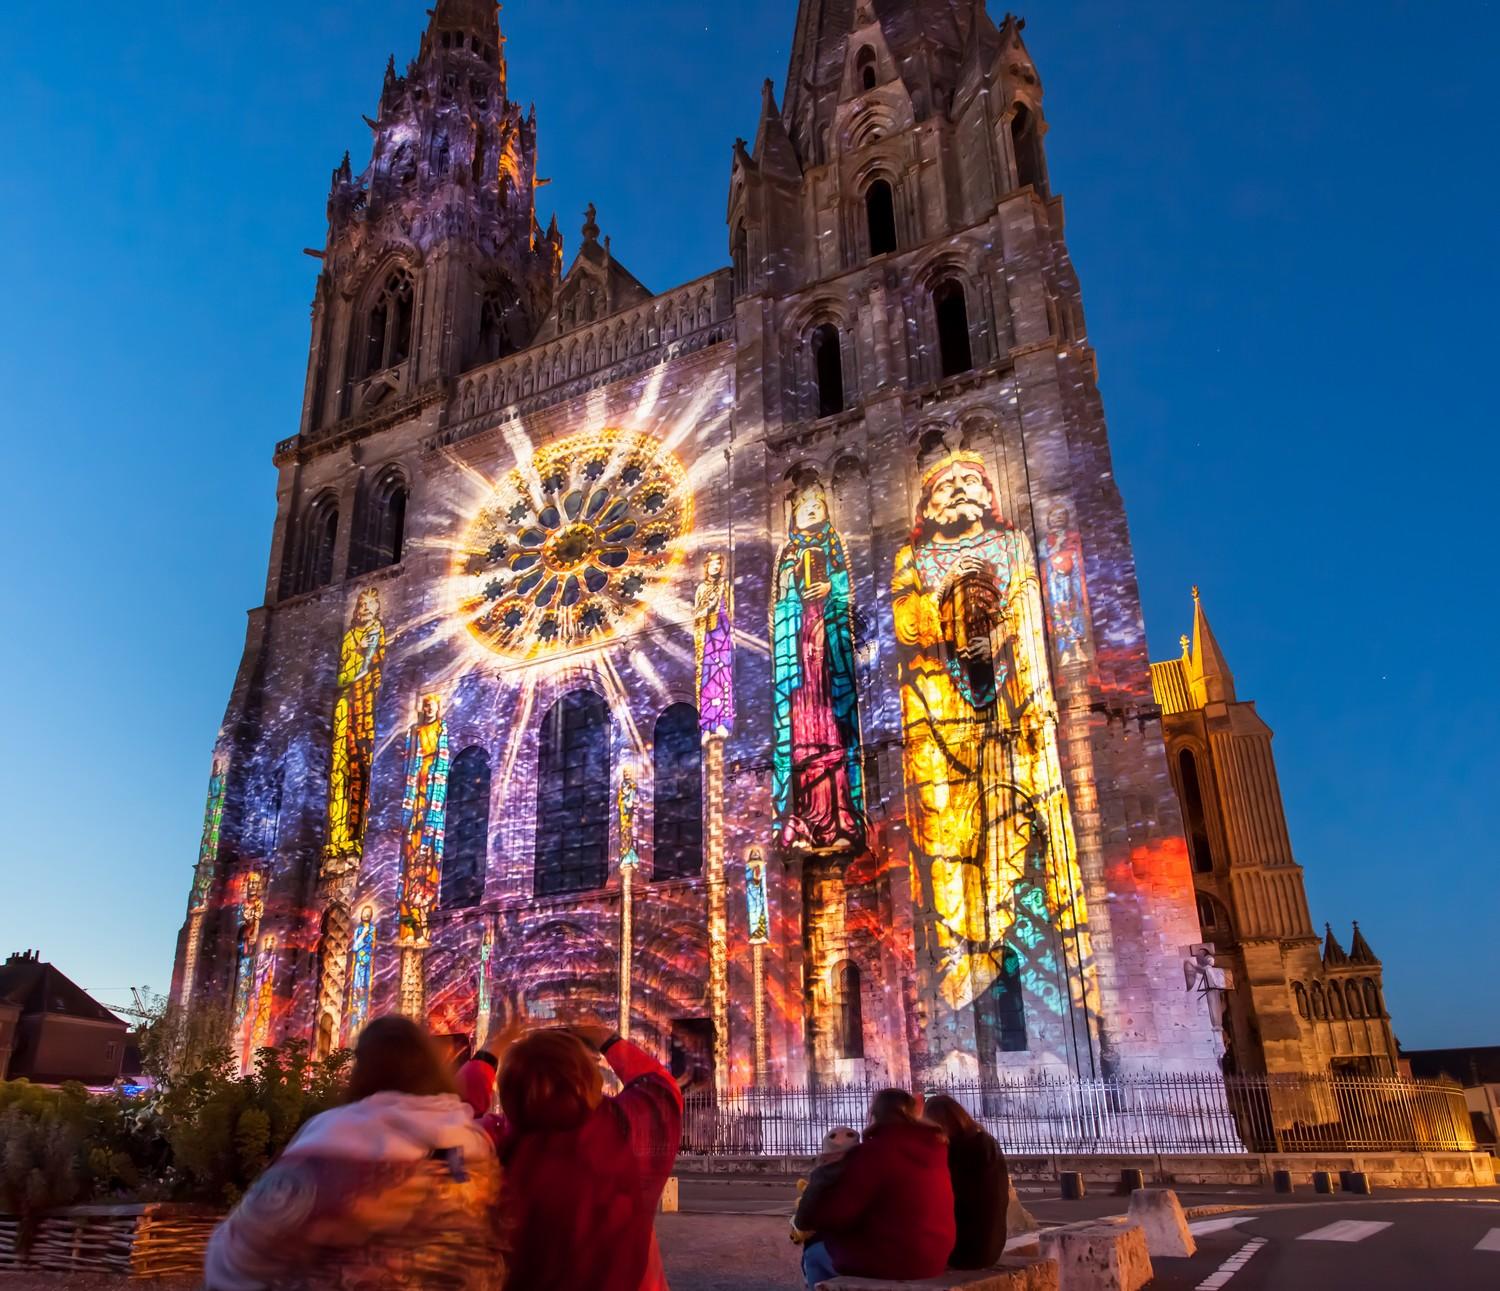 Cathedrale de Chartres - (C) Spectaculaires les allumeurs d'images - Cite Patrimoine Office de tourisme.jpg